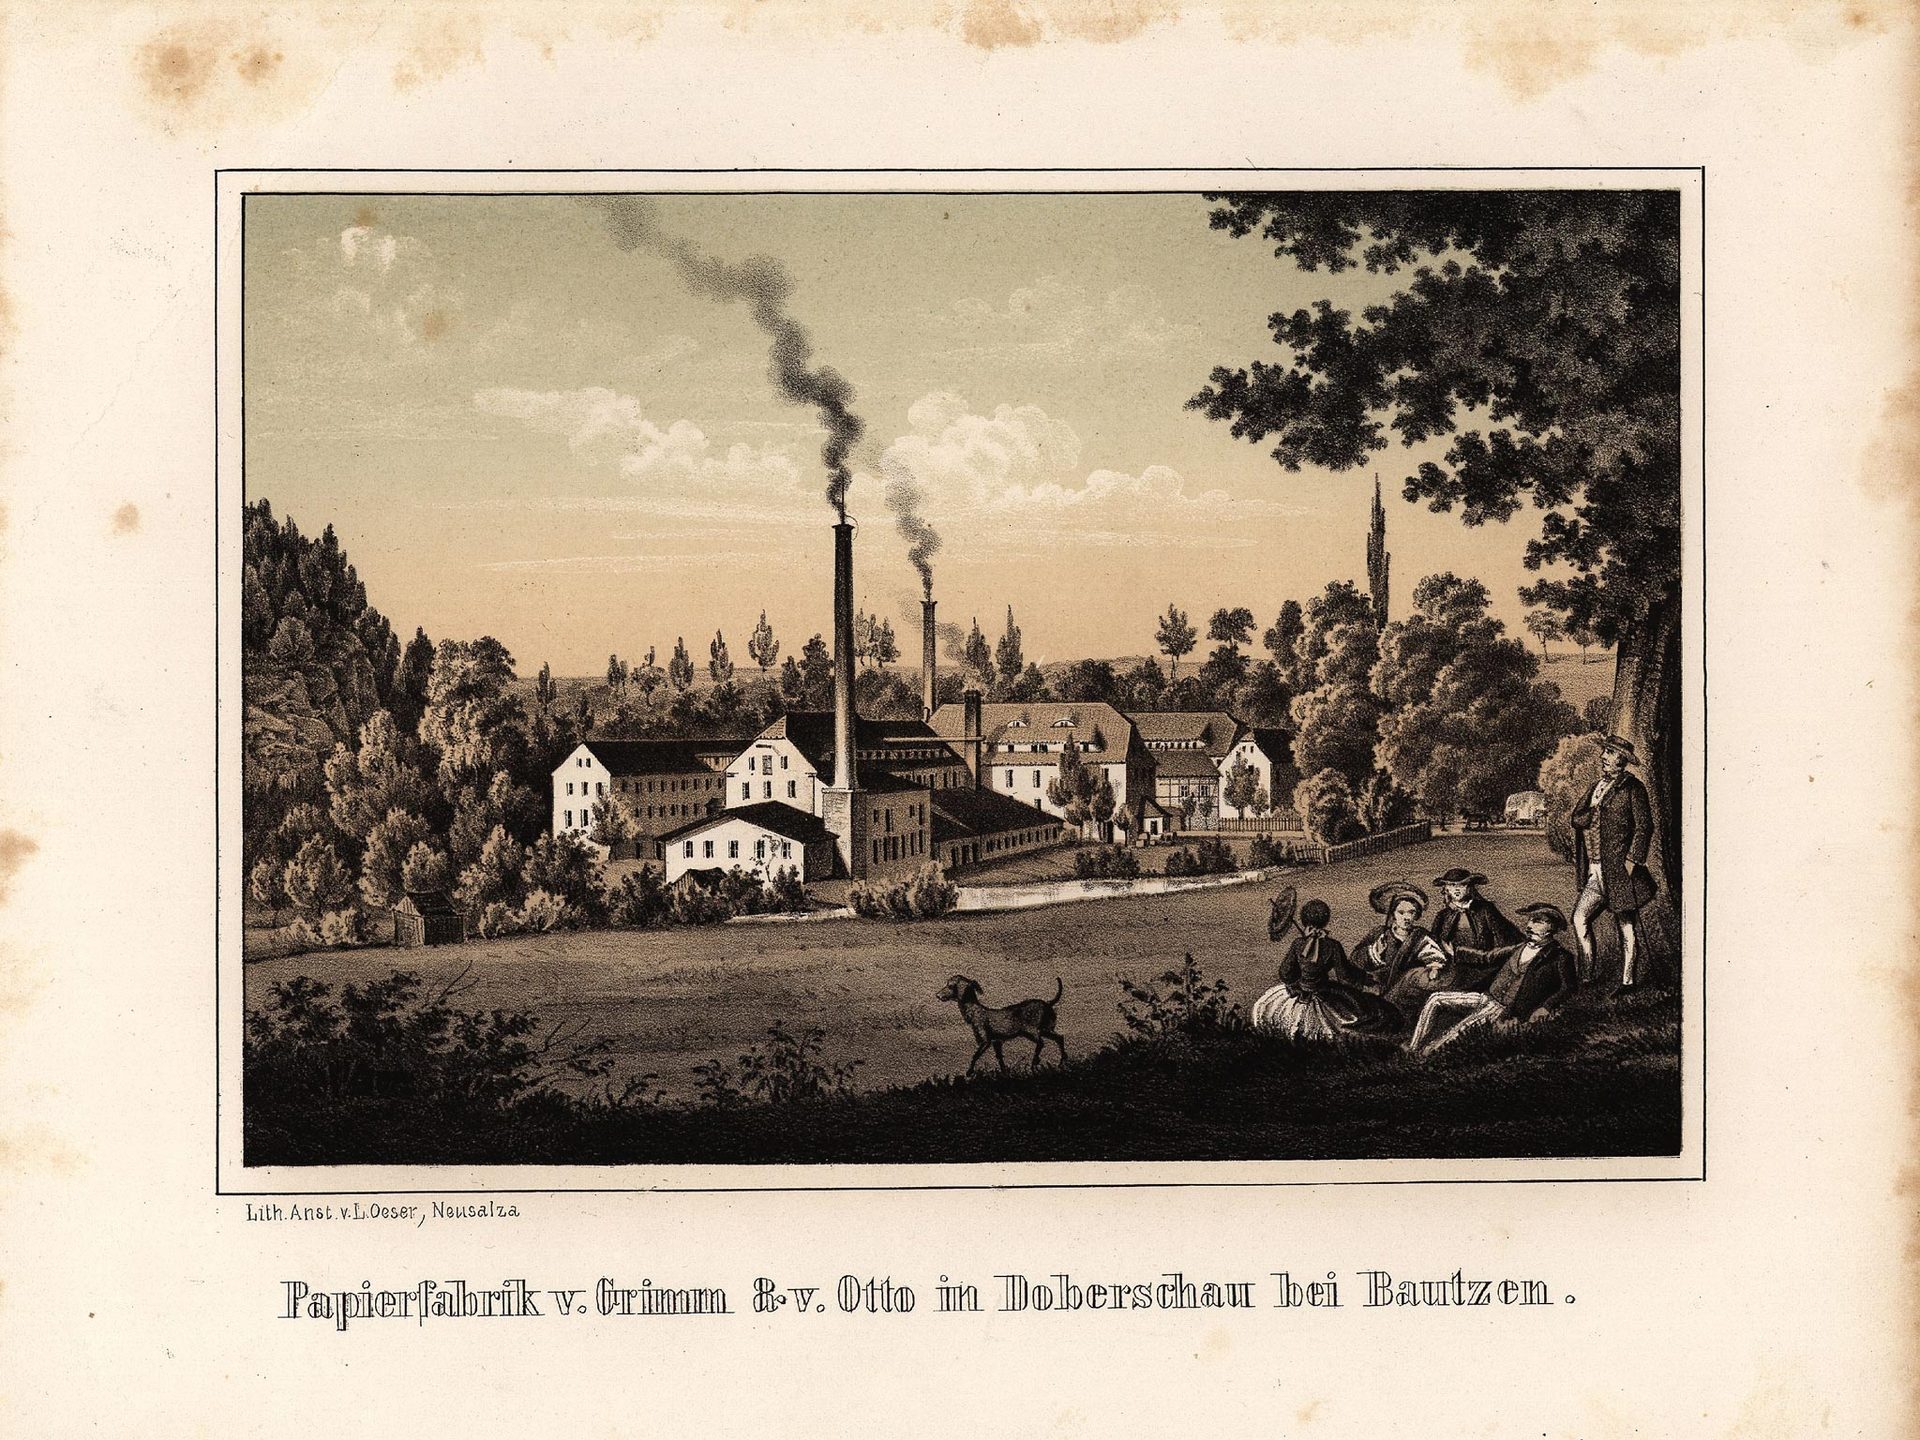 Papierfabrik v. Grimm &amp; v. Otto in Doberschau bei Bautzen